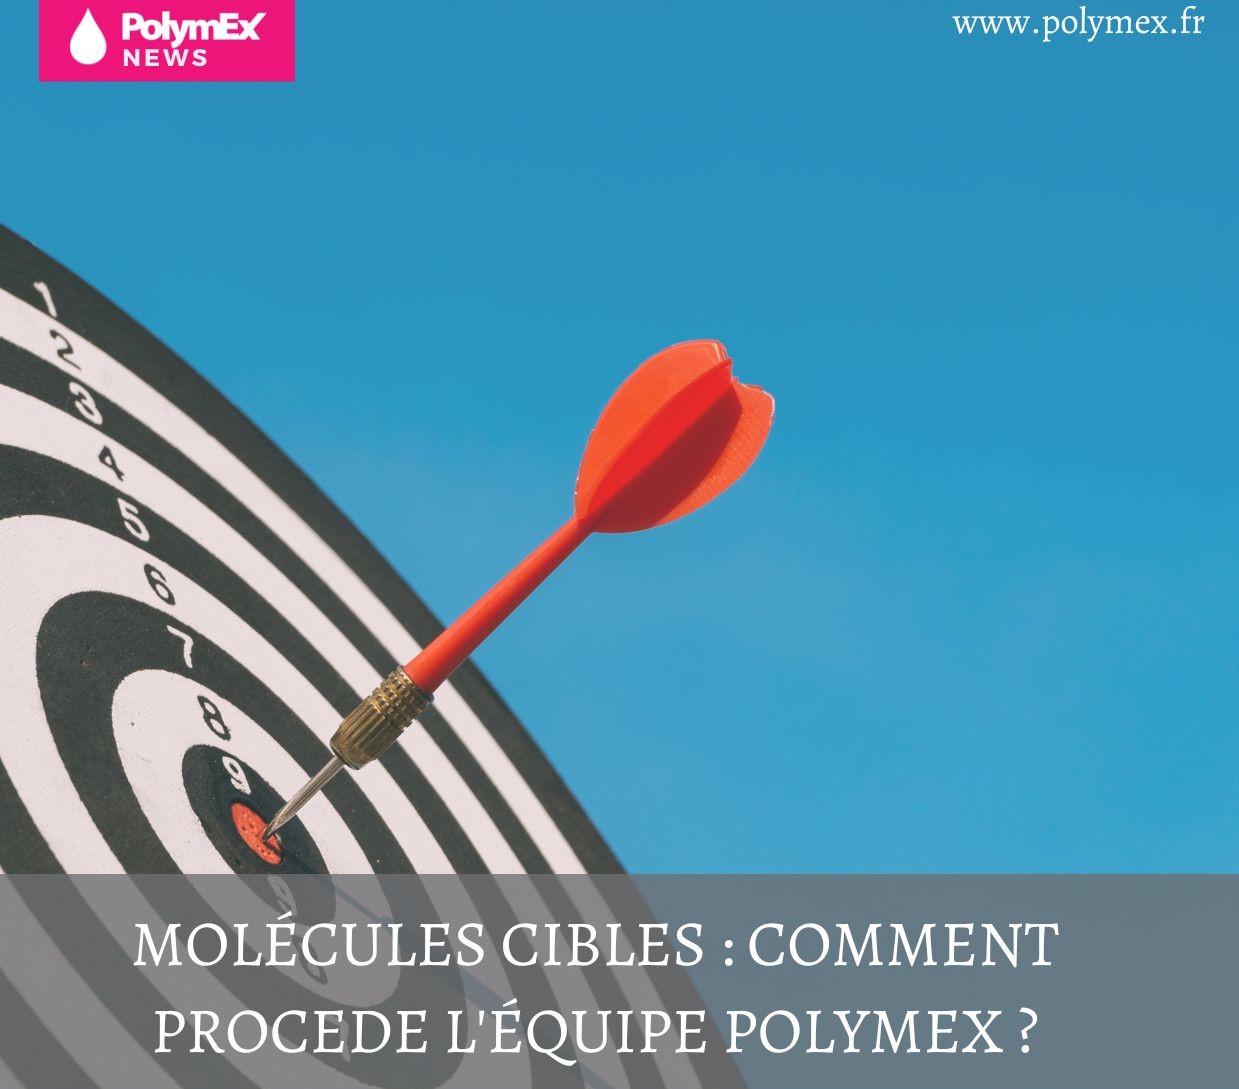 Molécules cibles : comment procède l’équipe Polymex ?